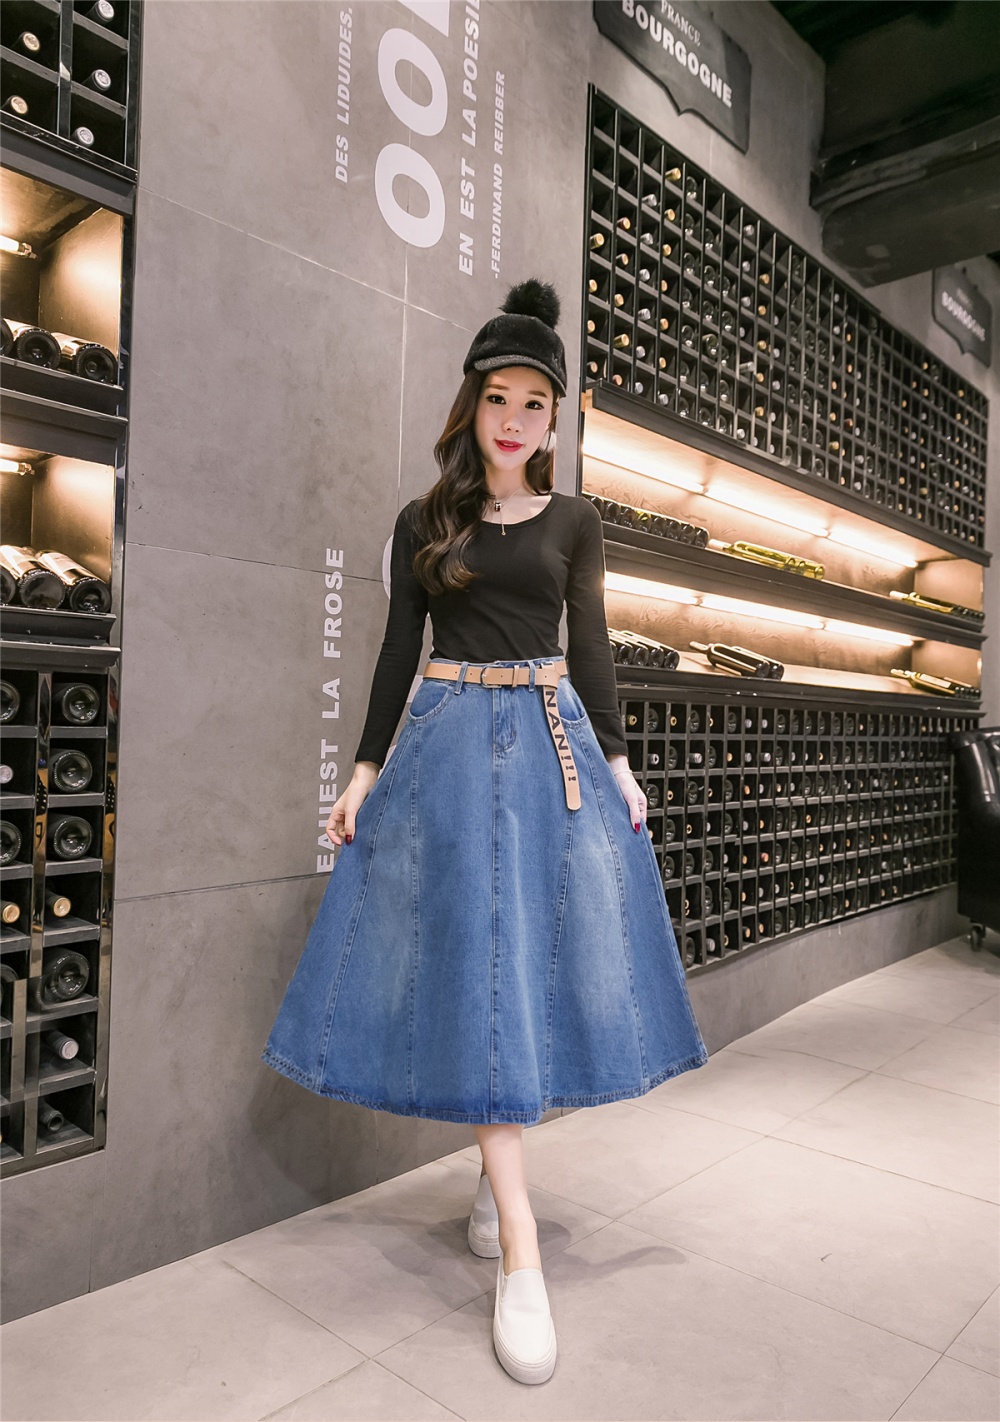 Korean style big skirt long skirt denim slim denim skirt